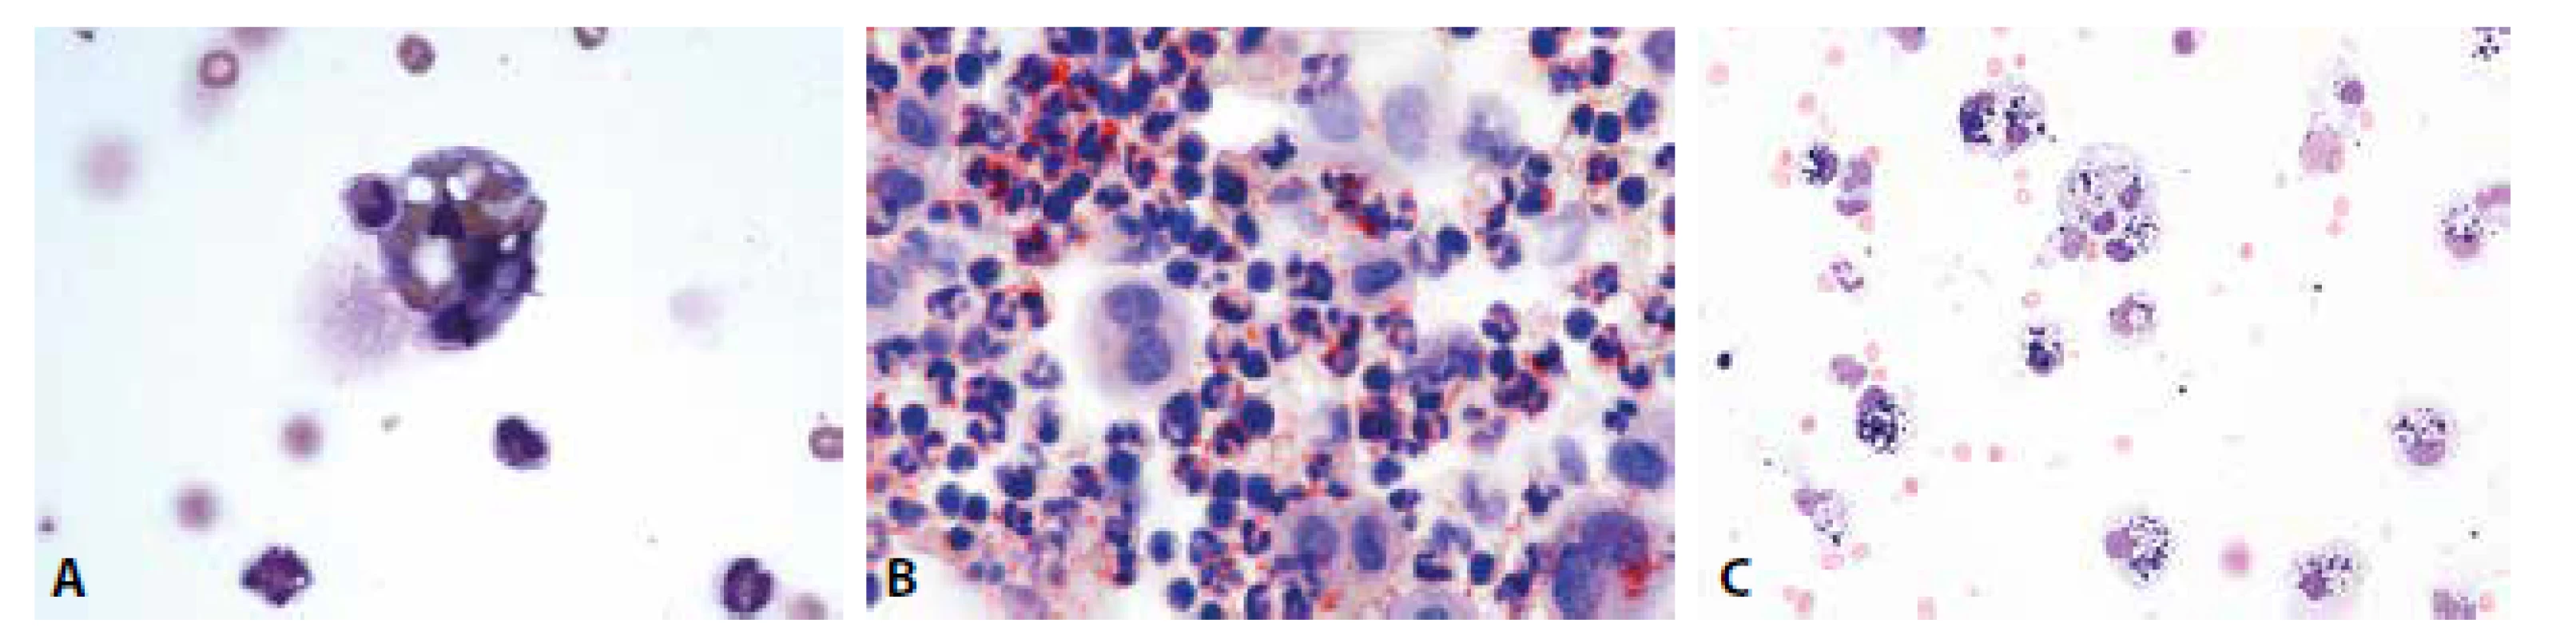 (A) Erytrofygocytóza v rámci tkáňové léze. V cytoplazmě makrofága zčásti odbarvené erytrocyty. Neutrofilní granulocyt jako známka tkáňové léze ve fázi
iniciálního pohlcení. (B) Úklidová reakce v barvení olejovou červení. Dystrofické steatóza neutrofilních granulocytů, pozitivita lipidů v cytoplazmě makrofágů.
(C) Úklidová reakce posthemoragická. Makrofágy s železitým pigmentem. MGG, 400.